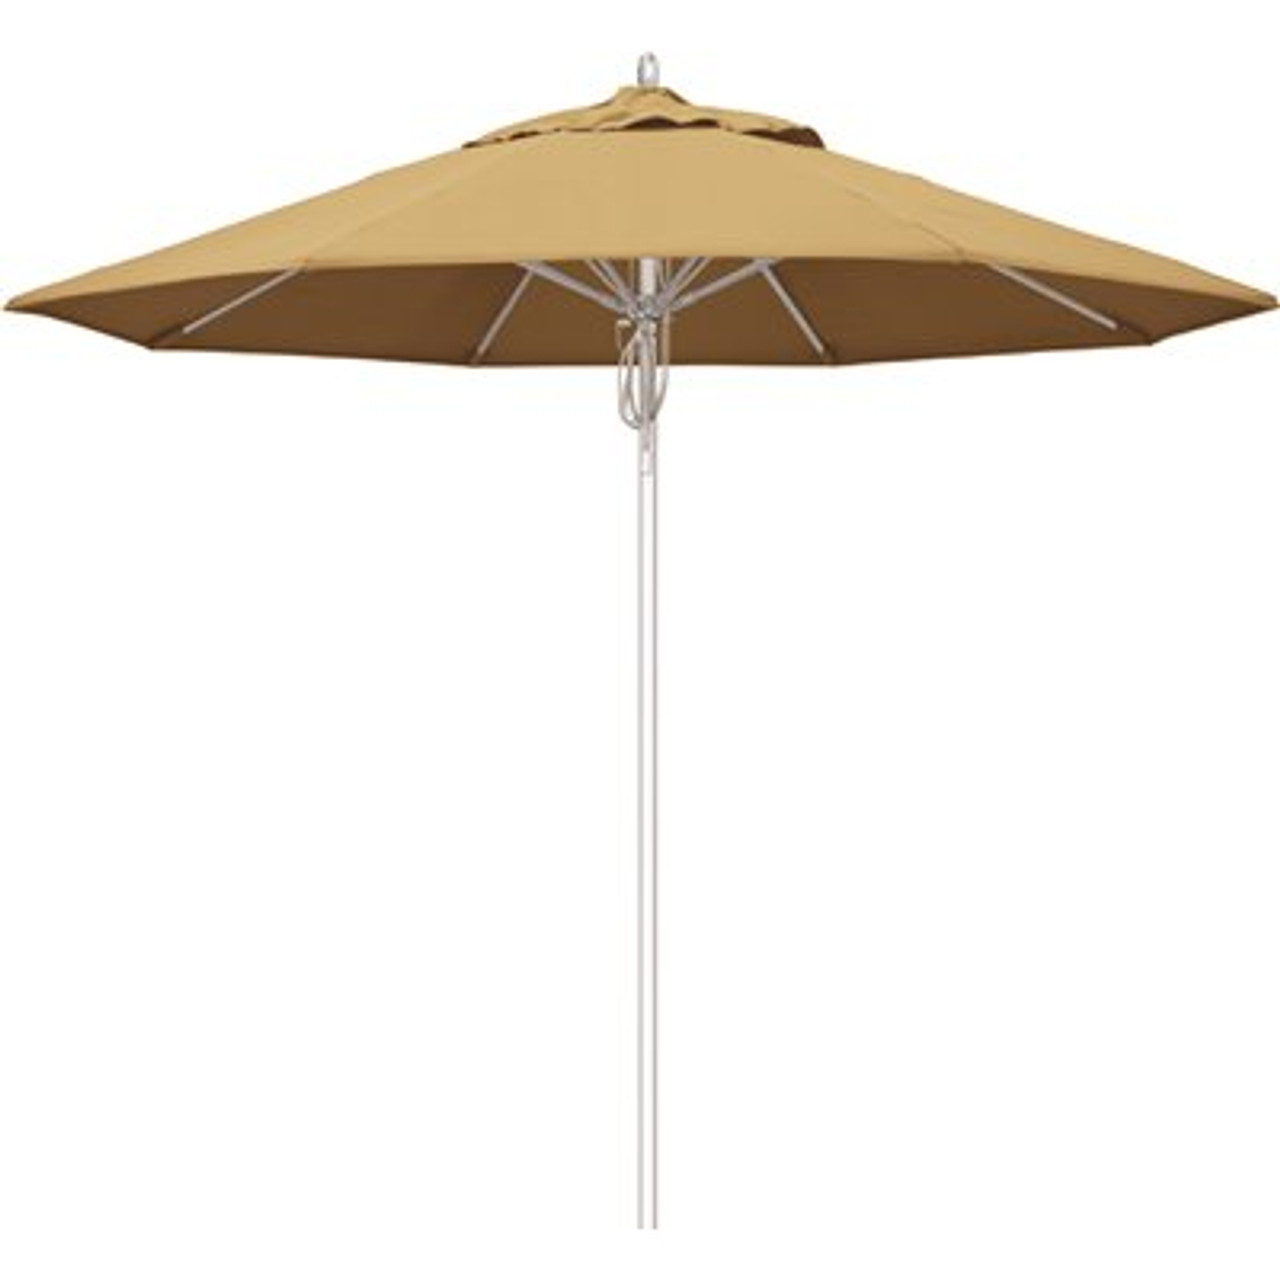 California Umbrella 9 ft. Silver Aluminum Commercial Fiberglass Ribs Market Patio Umbrella and Pulley Lift in Wheat Sunbrella